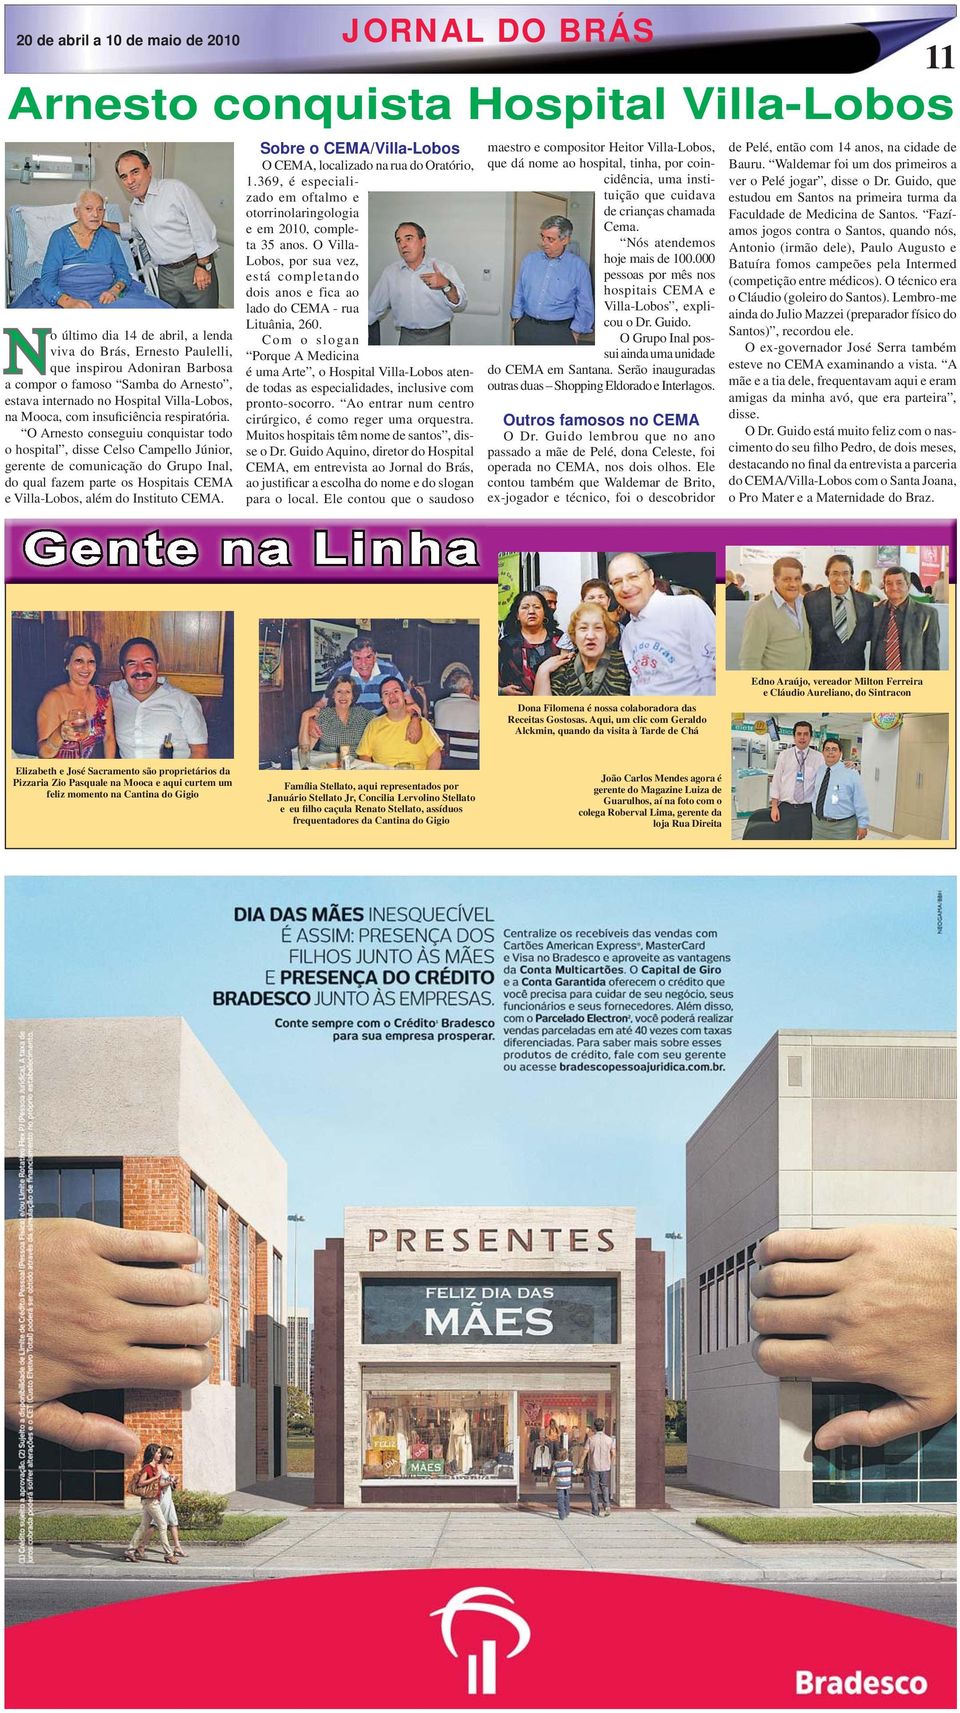 O Arnesto conseguiu conquistar todo o hospital, disse Celso Campello Júnior, gerente de comunicação do Grupo Inal, do qual fazem parte os Hospitais CEMA e Villa-Lobos, além do Instituto CEMA.